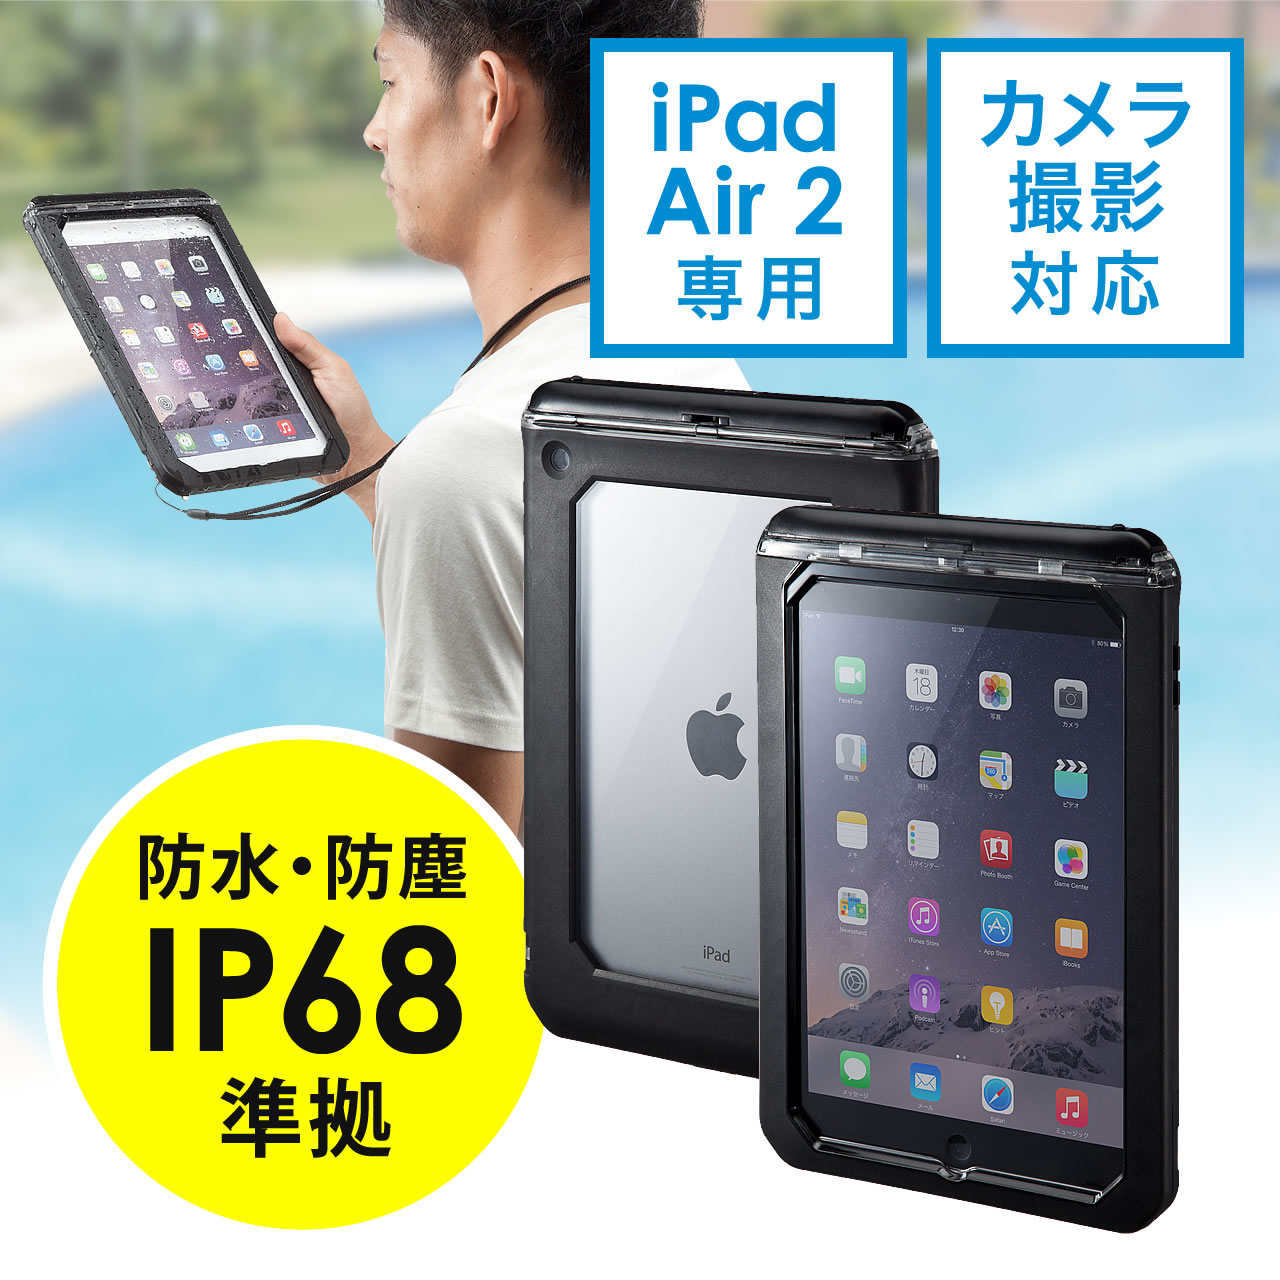 iPad hn[hP[XiϏՌEIP68擾ECEJΉj 200-TABC003